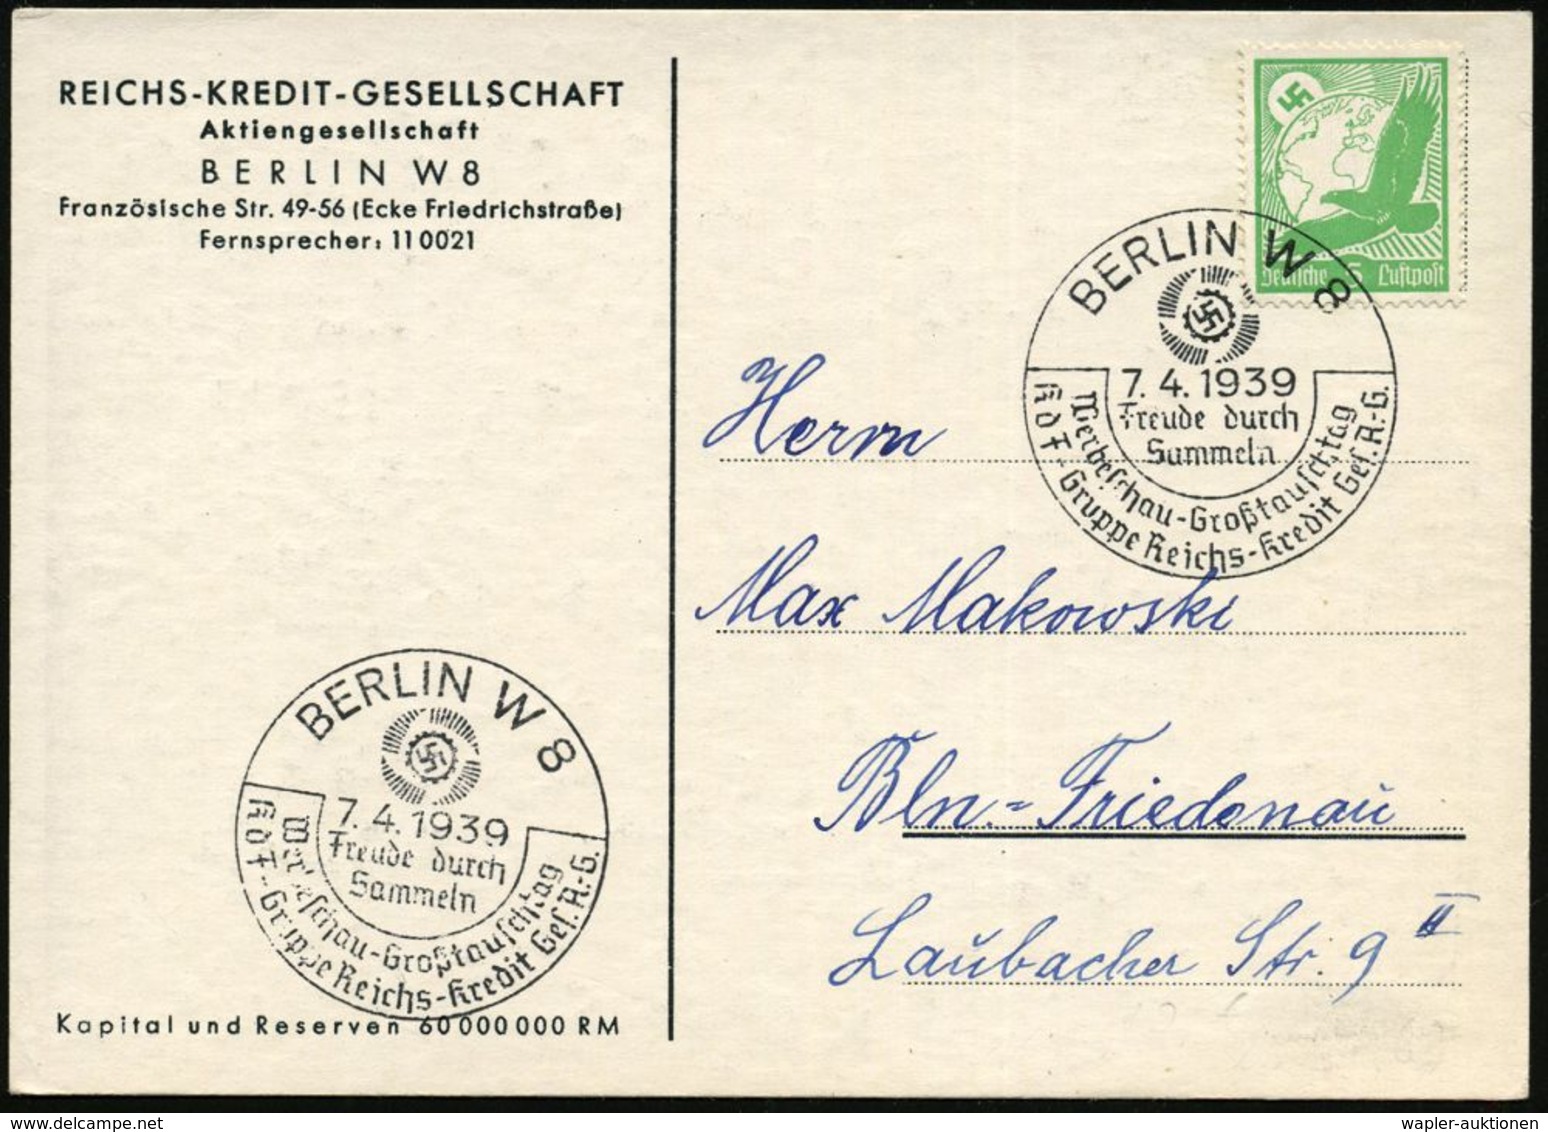 BERLIN W 8/ Freude Durch/ Sammeln/ Werbeschau../ KdF-Gruppe Reichs-Kredit-Ges. A.G. 1939 (7.4.) Seltener SSt (KdF-Logo)  - Non Classés